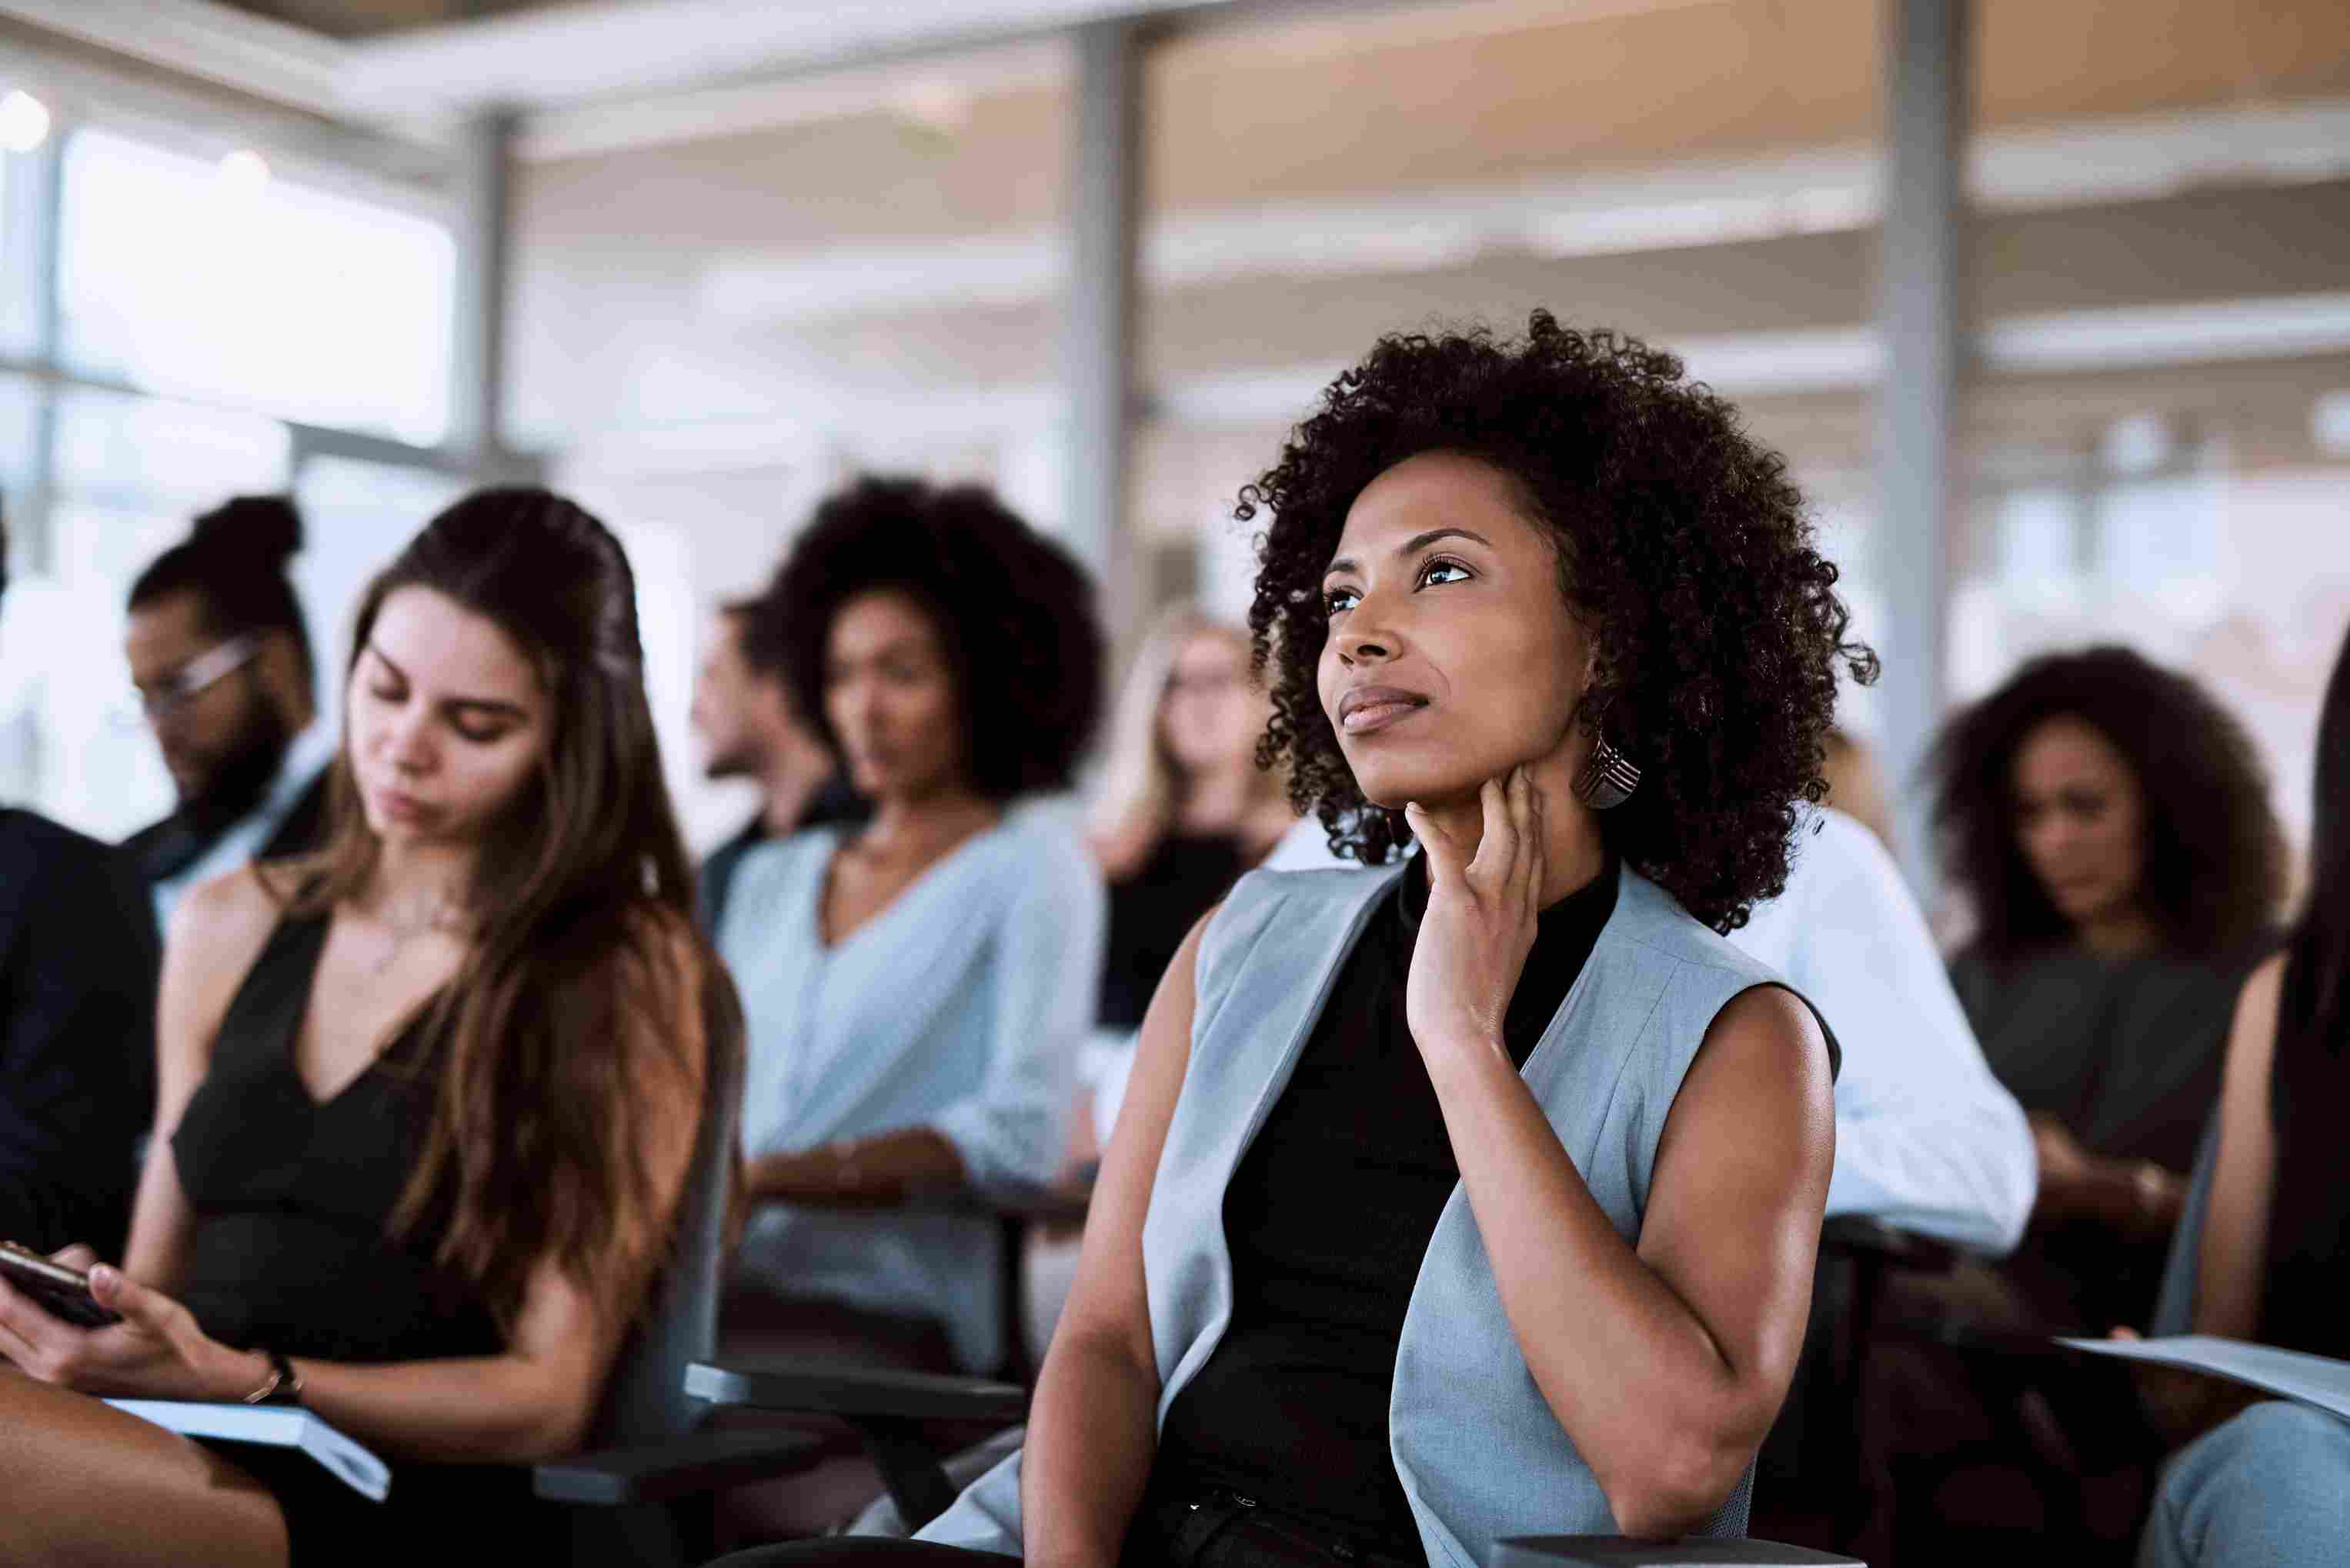 Braskem lança programa de capacitação em tecnologia para pretos e pardos, onde 50% das vagas são destinadas a mulheres